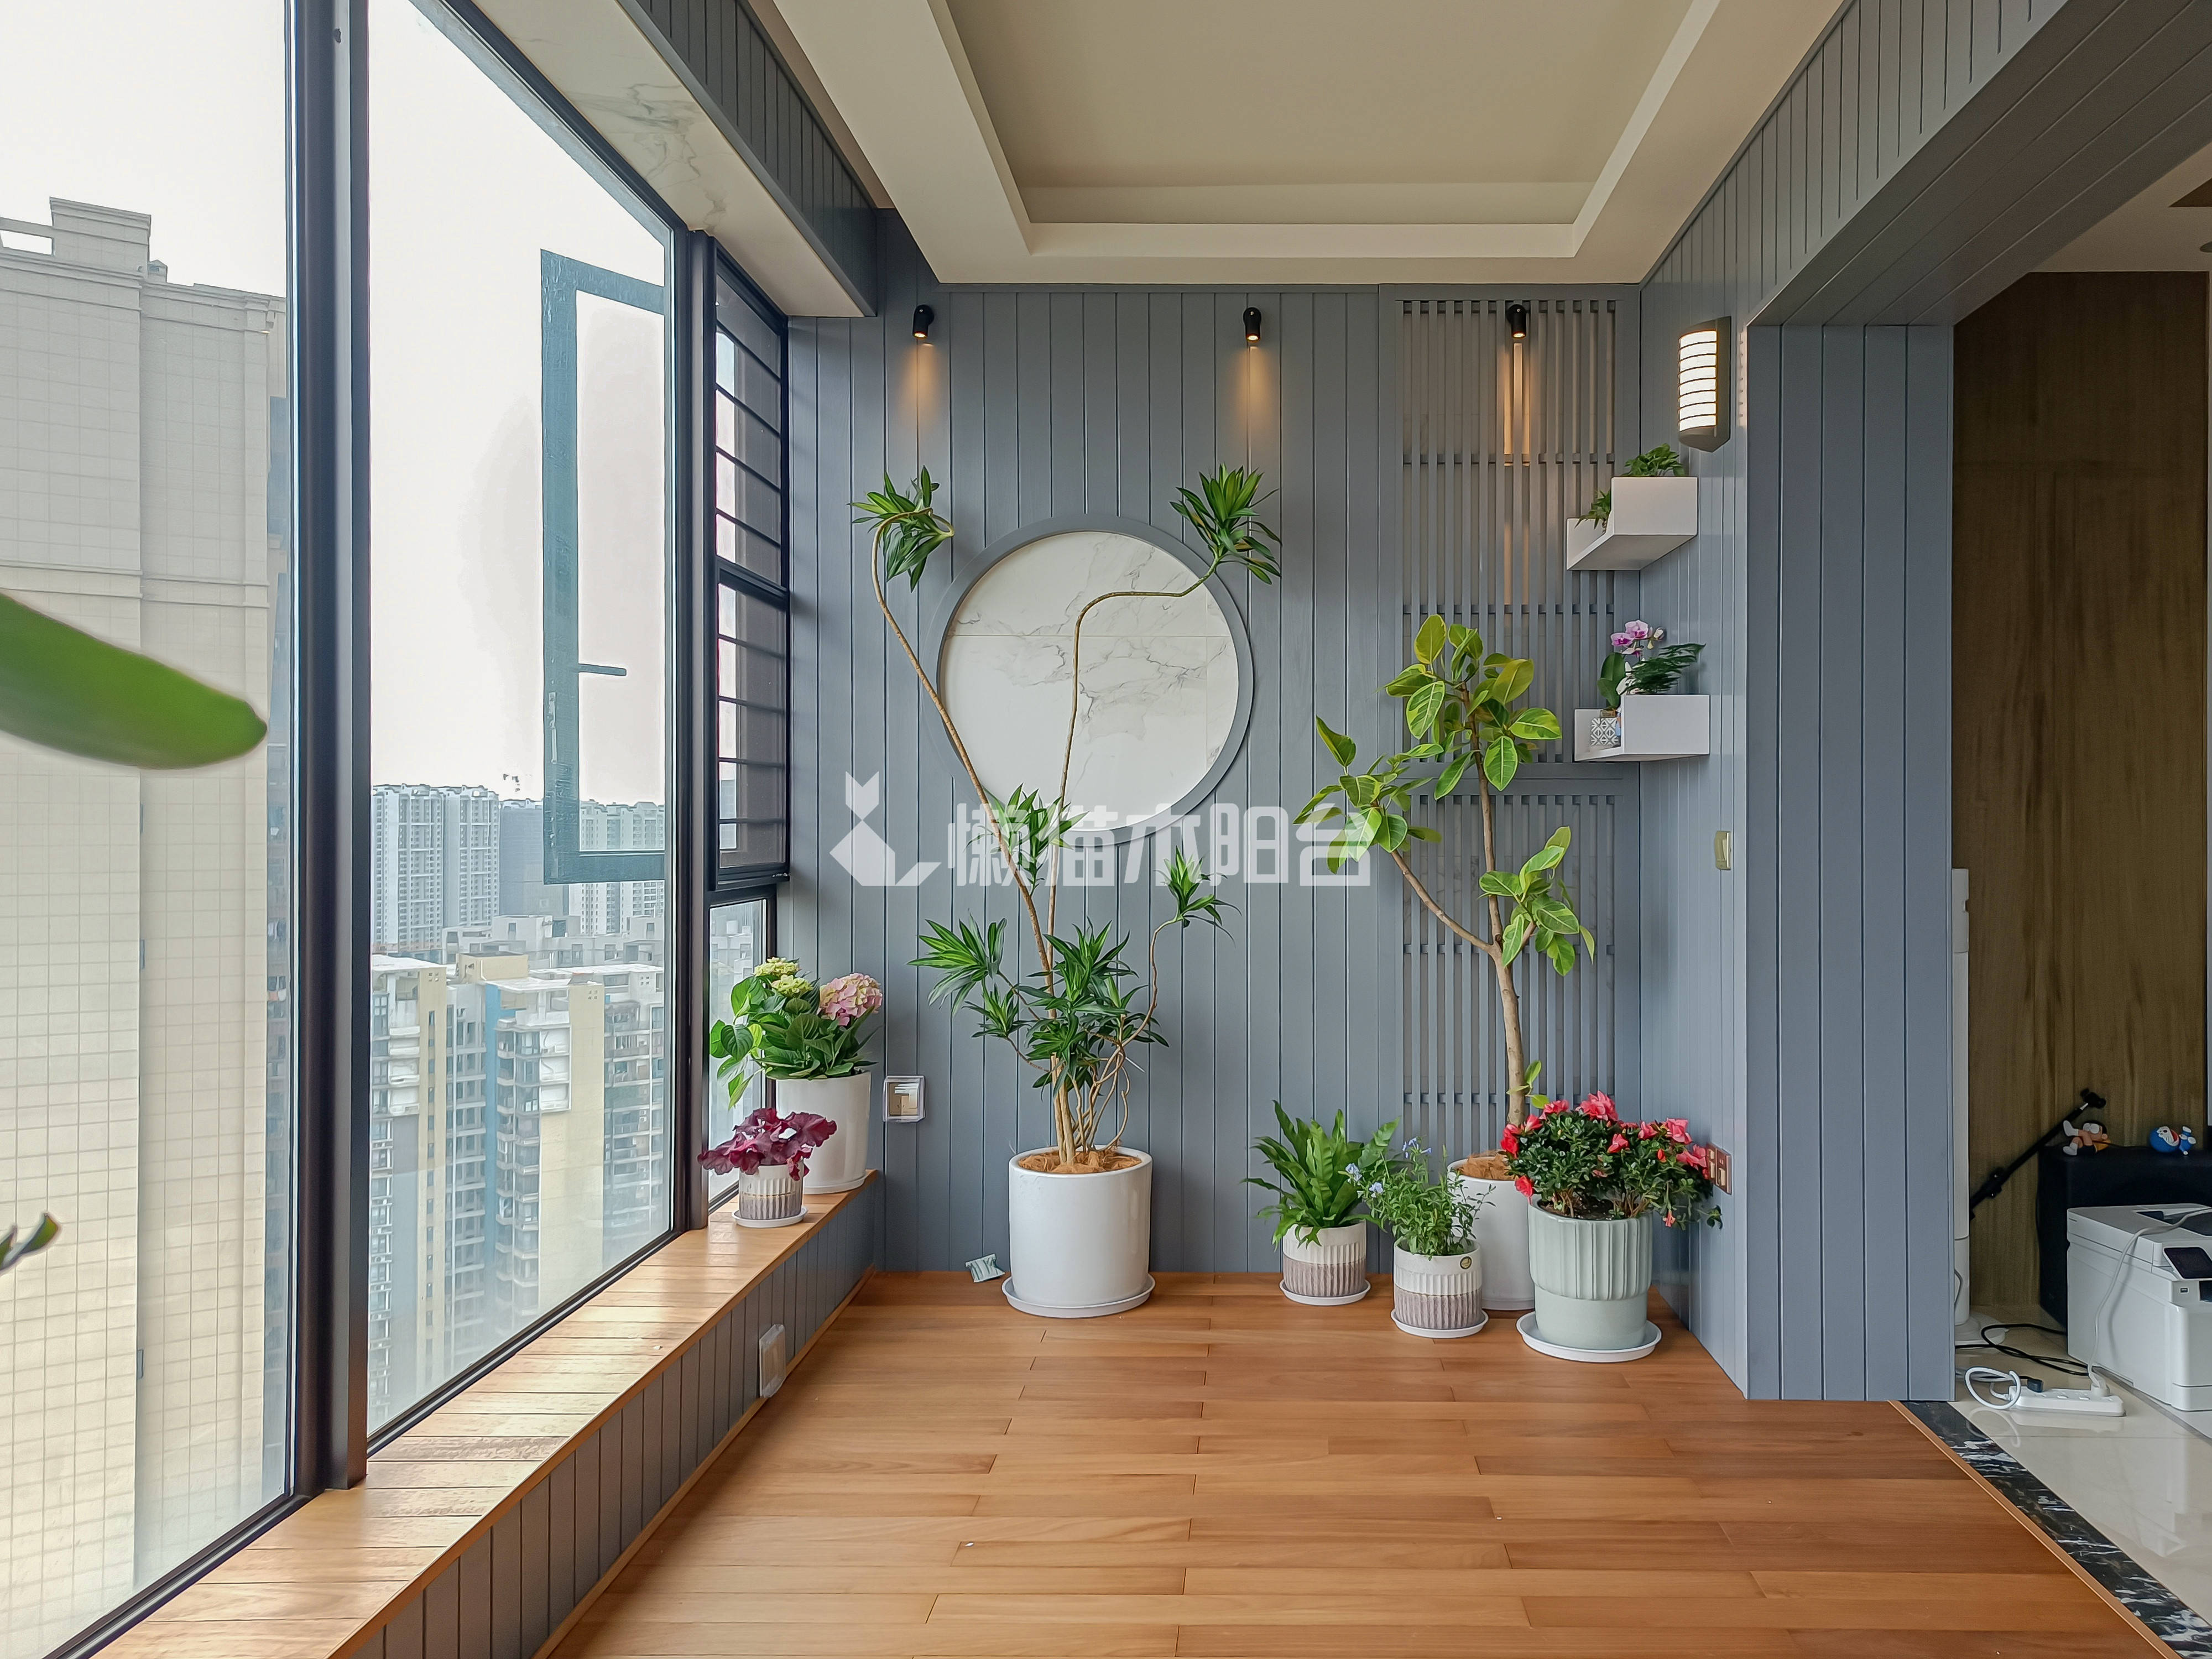 阳台设计如何满足休闲 茶室需求?